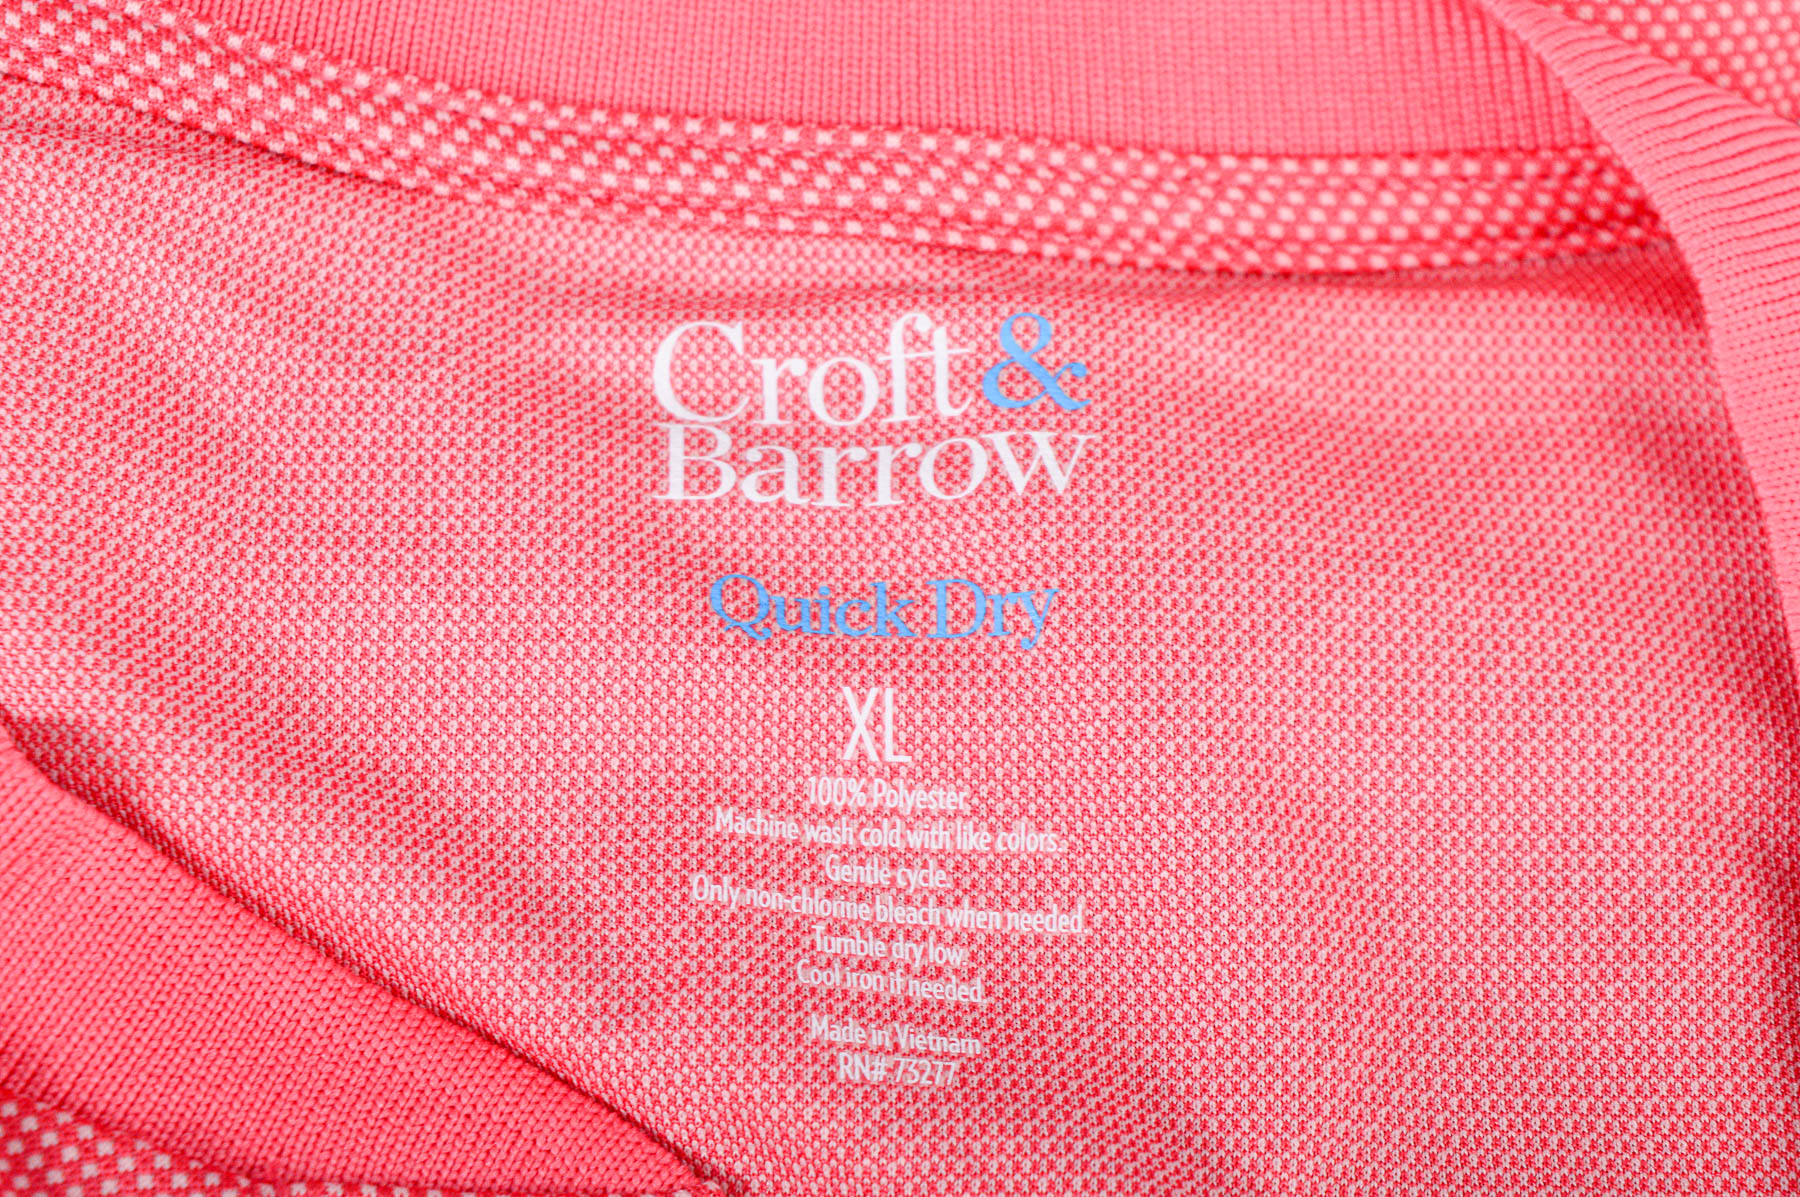 Αντρική μπλούζα - Croft & Barrow - 2